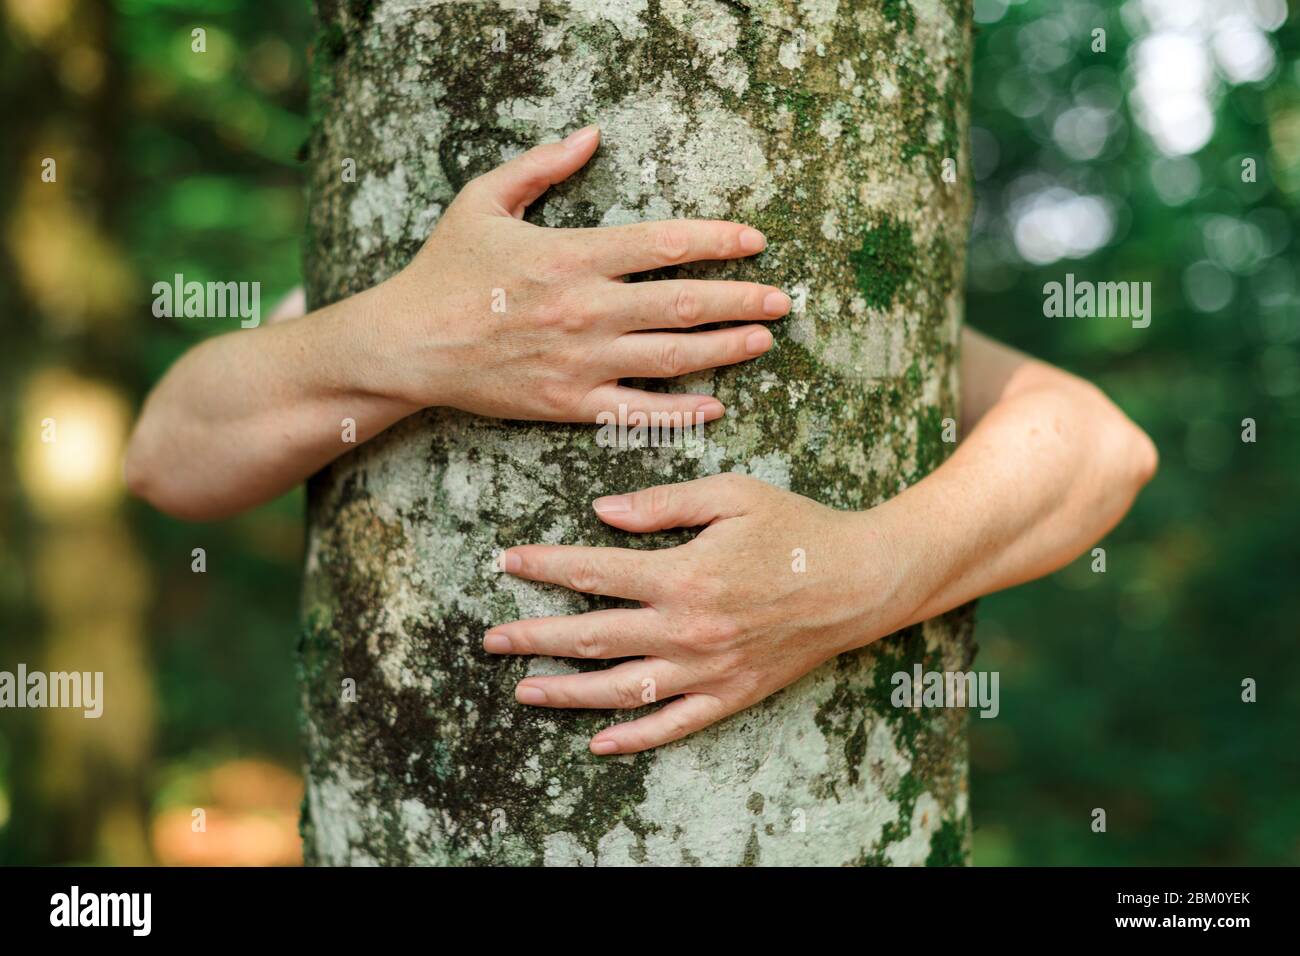 Arbre généalogique écologiste hugger est tronc bois forêt en serrant, femme bras autour de l'arbre, selective focus Banque D'Images